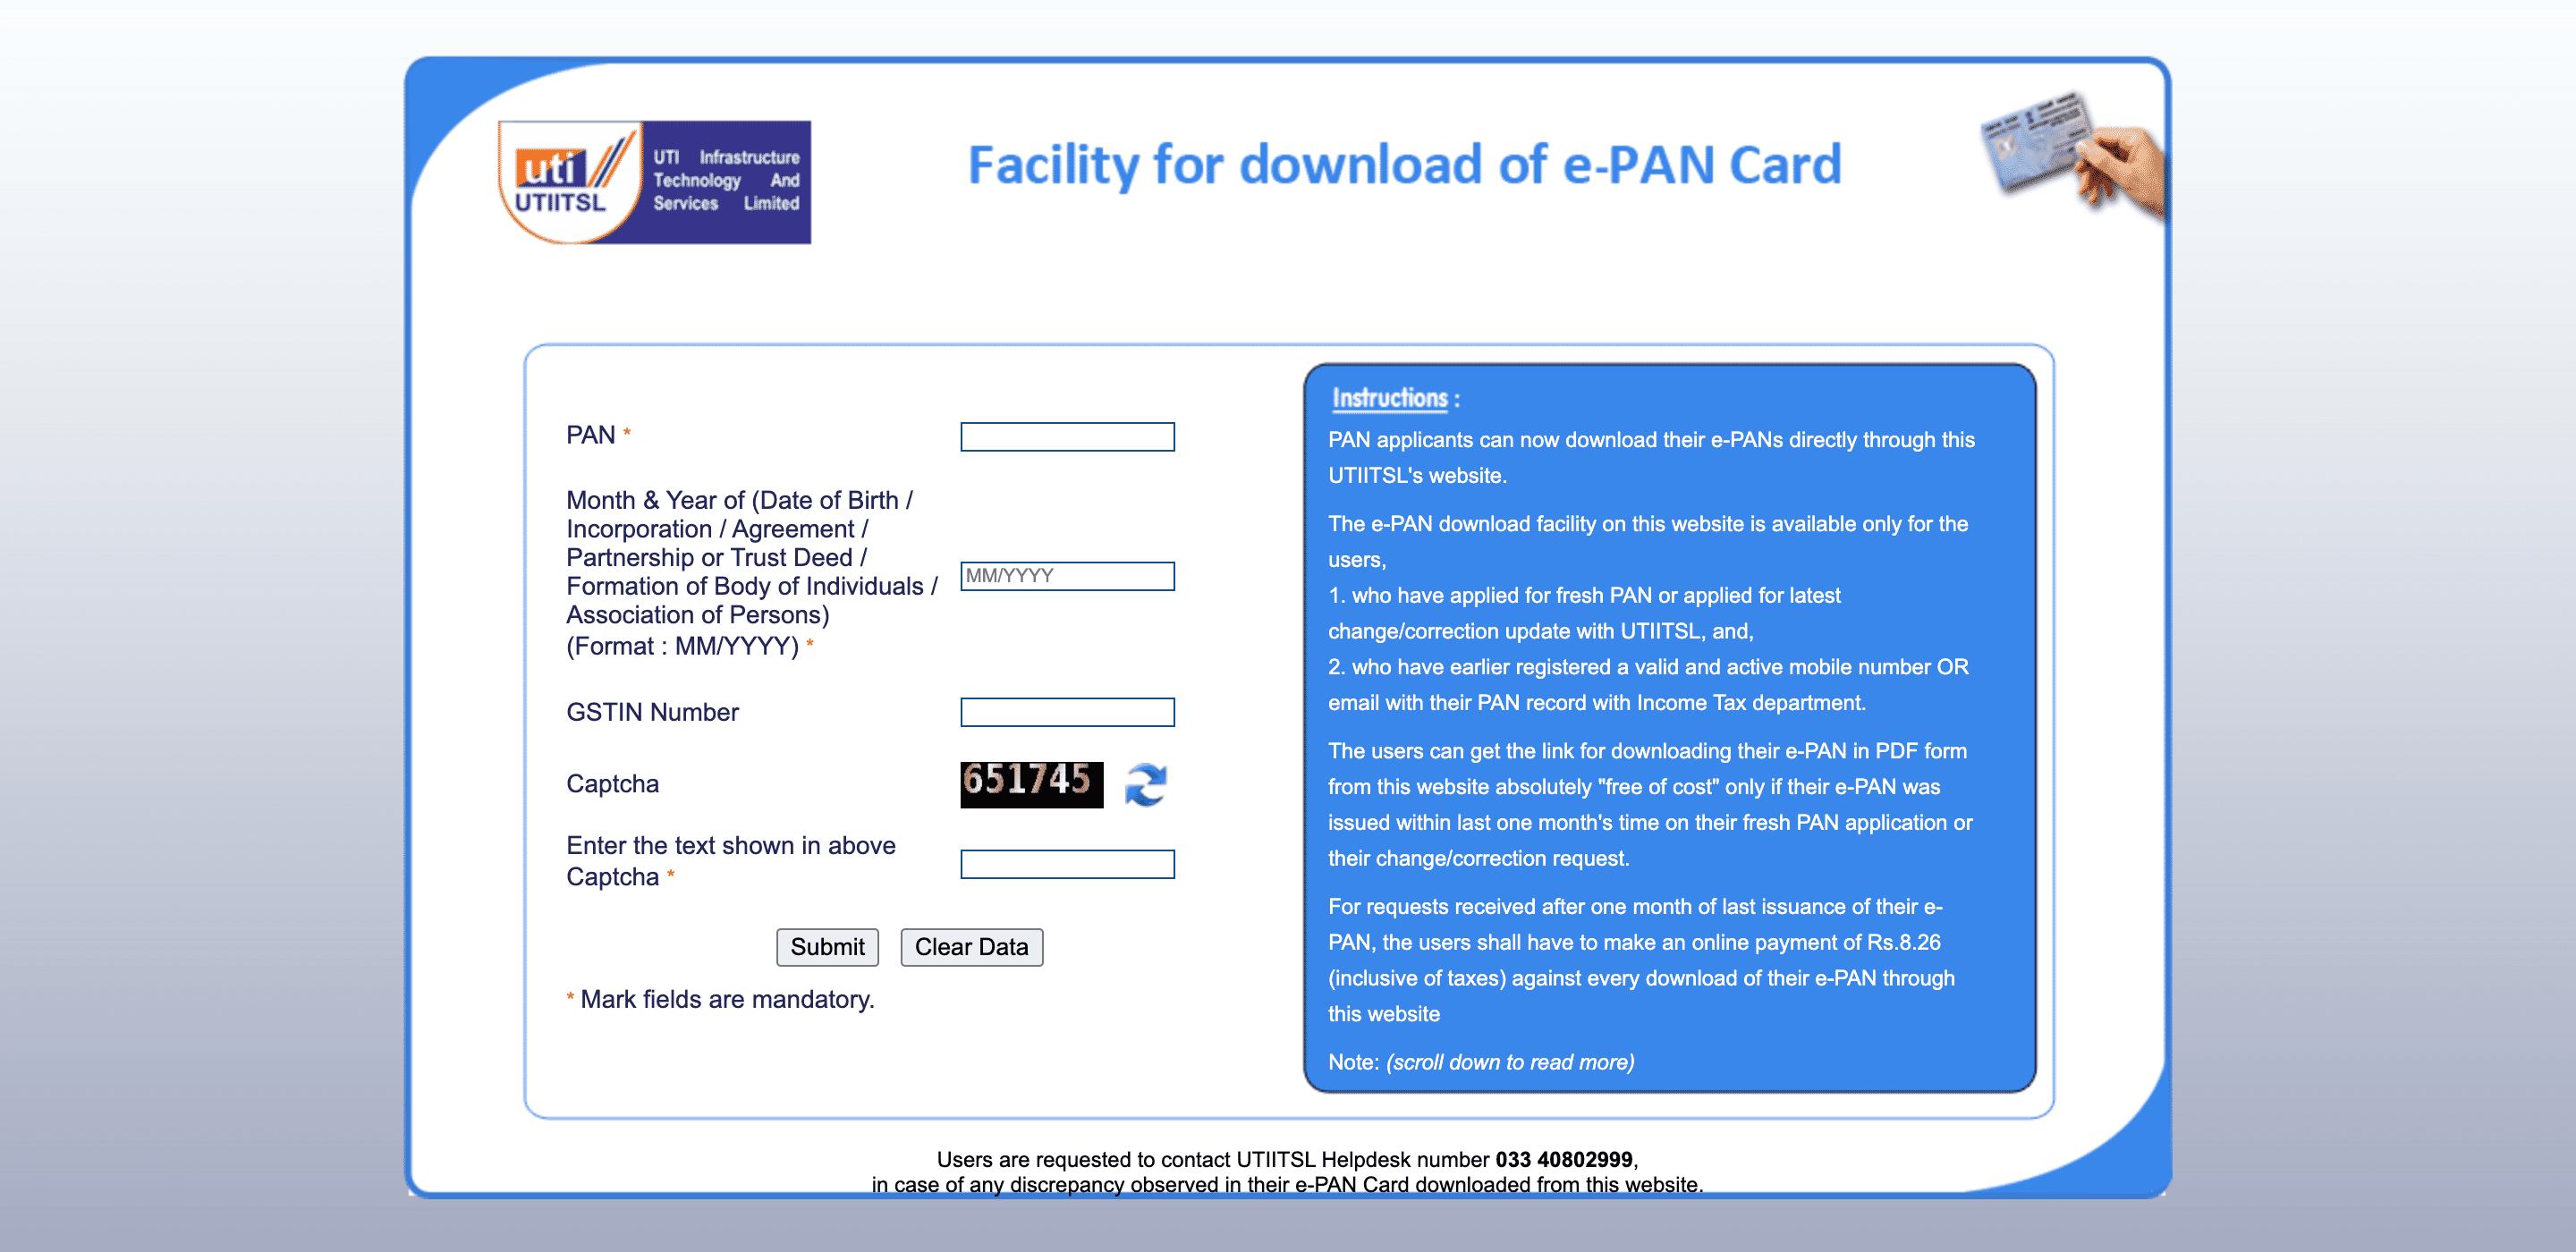 Downloading e-PAN Card using UTIITSL